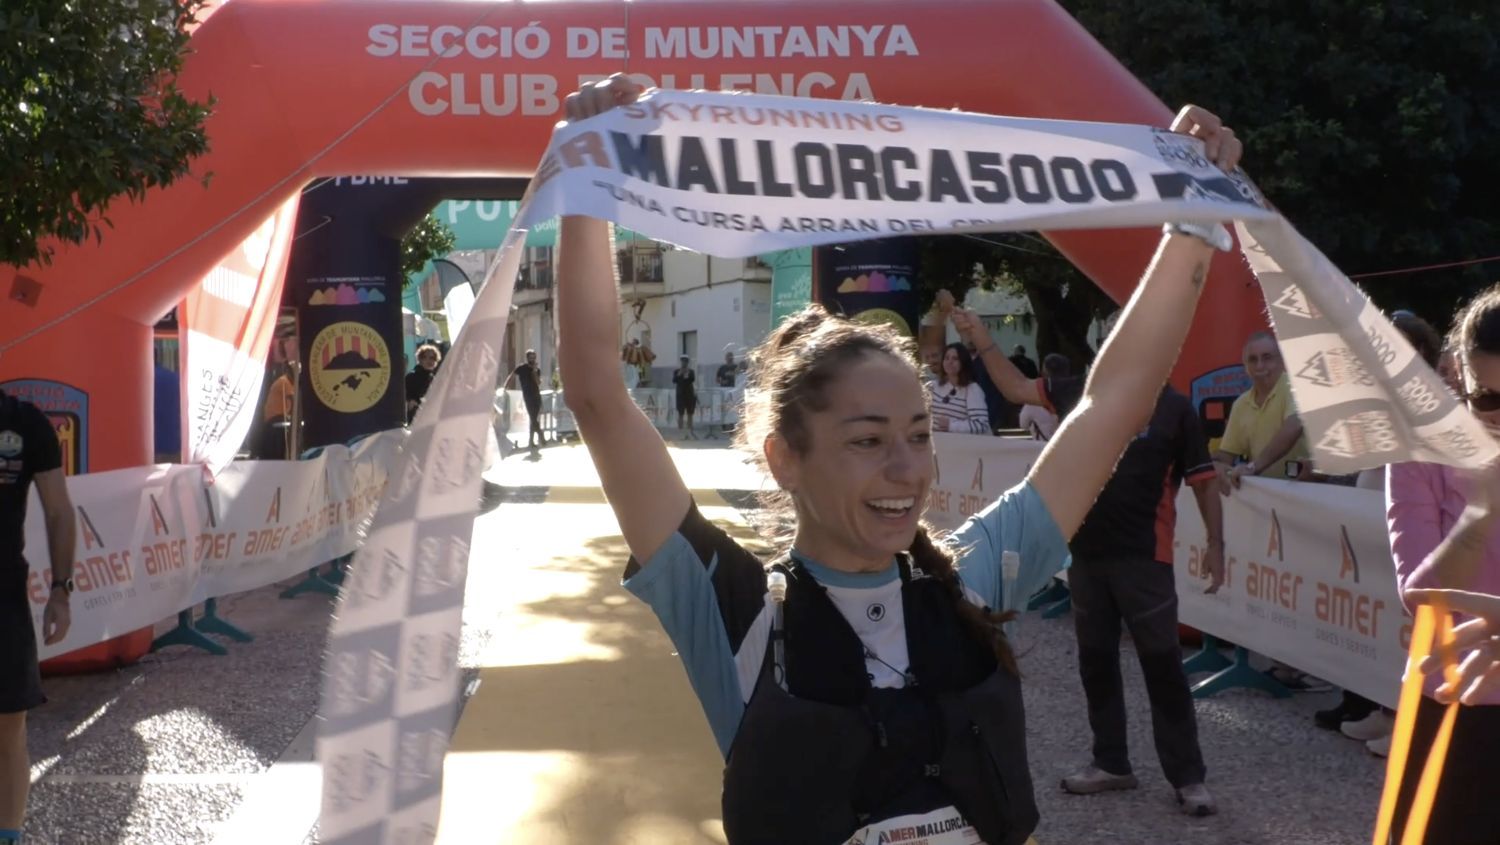 Las mejores imágenes de la Amer Mallorca 5000 Skyrunning